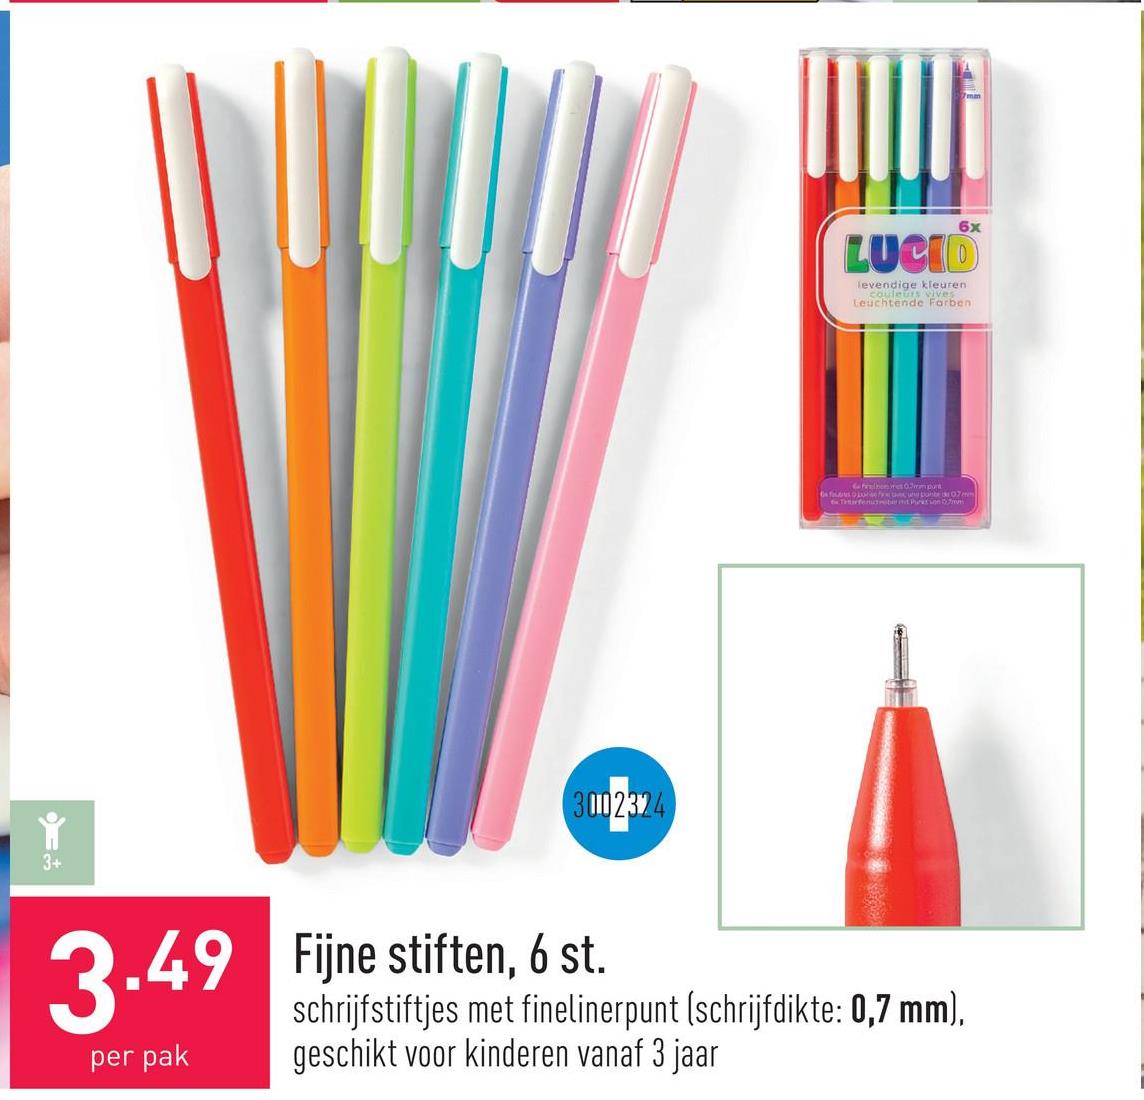 Fijne stiften, 6 st. schrijfstiftjes met finelinerpunt (schrijfdikte: 0,7 mm), geschikt voor kinderen vanaf 3 jaar